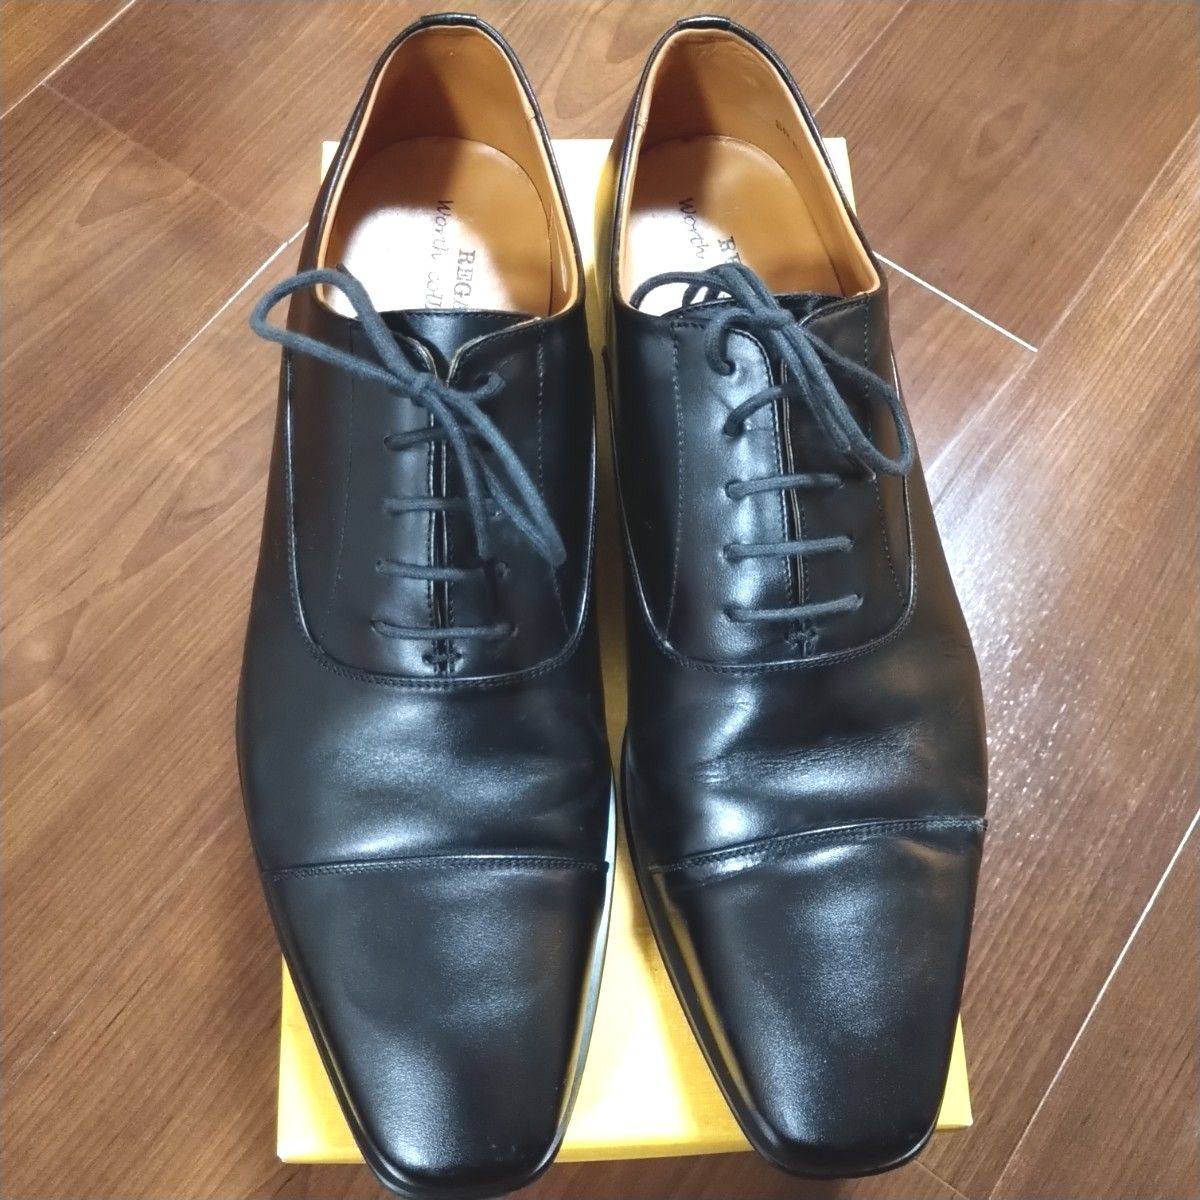 REGAL ストレートチップ 革靴 【26.5cm】ビジネスシューズ ブラック レザーシューズ リーガル 本革